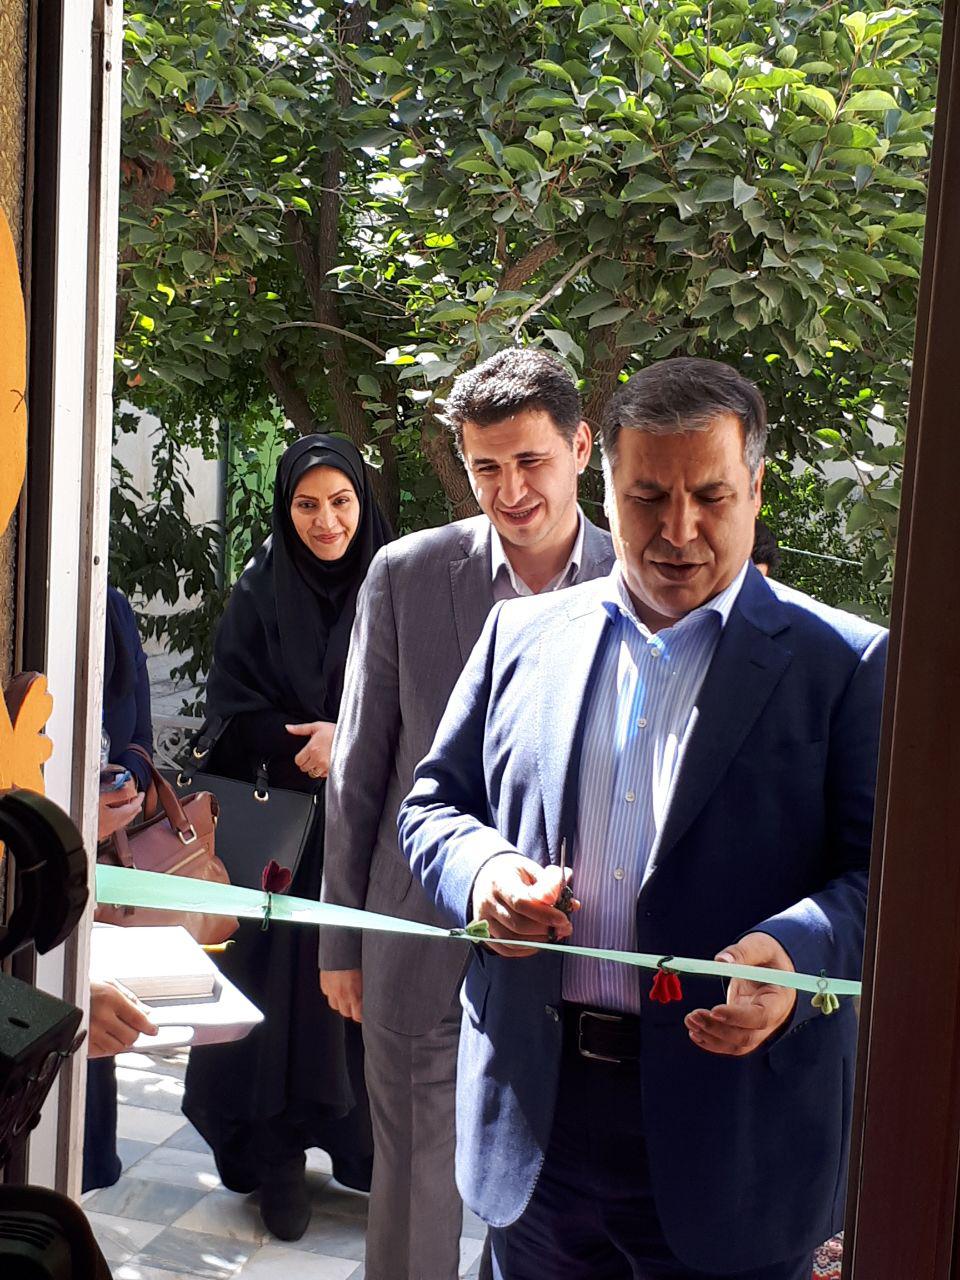 افتتاح ۳ مرکز خدماتی بهزیستی در شهریار،همزمان با فرا رسیدن هفته بهزیستی